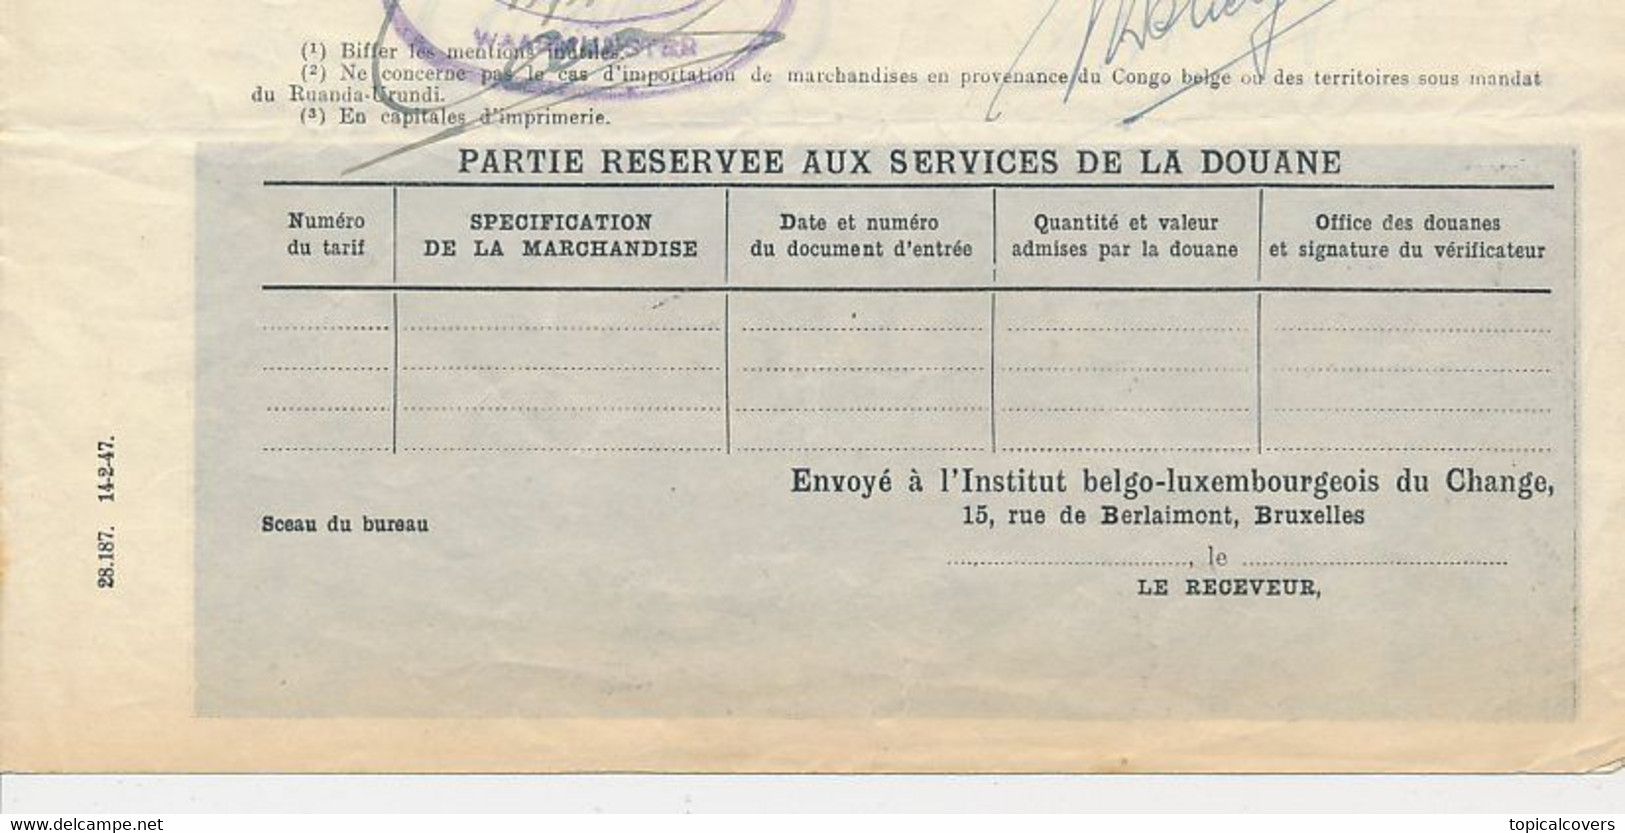 Compleet Formulier 1948 - Belgisch Luxemburgsche  Commissie Vergunningen - 2 X 10Frs. - Documents